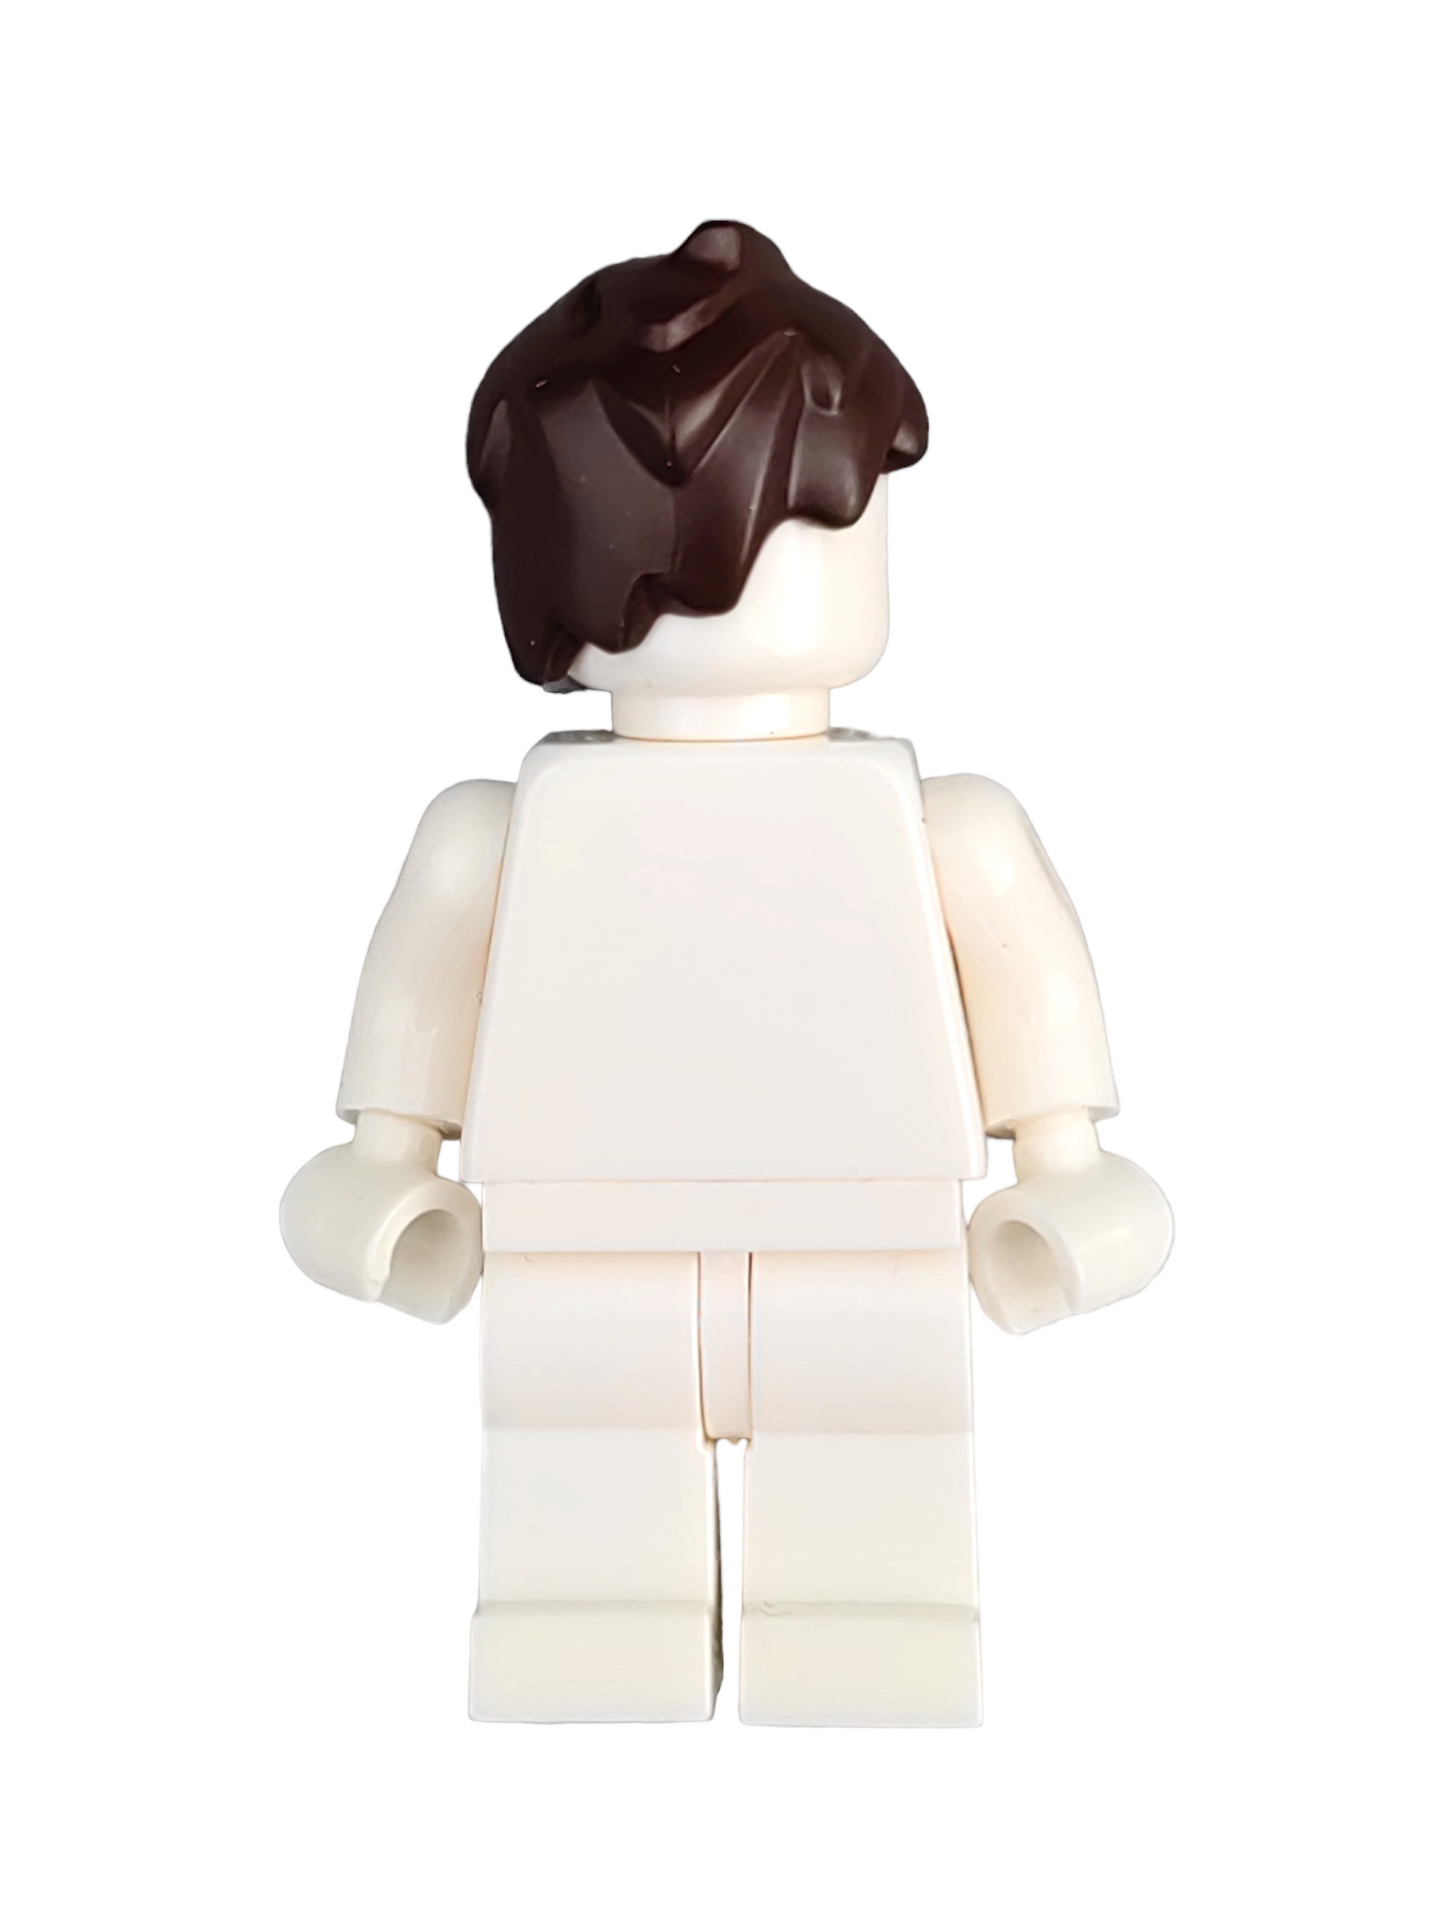 LEGO Wig, Dark Brown Short Wavy Hair - UB1324